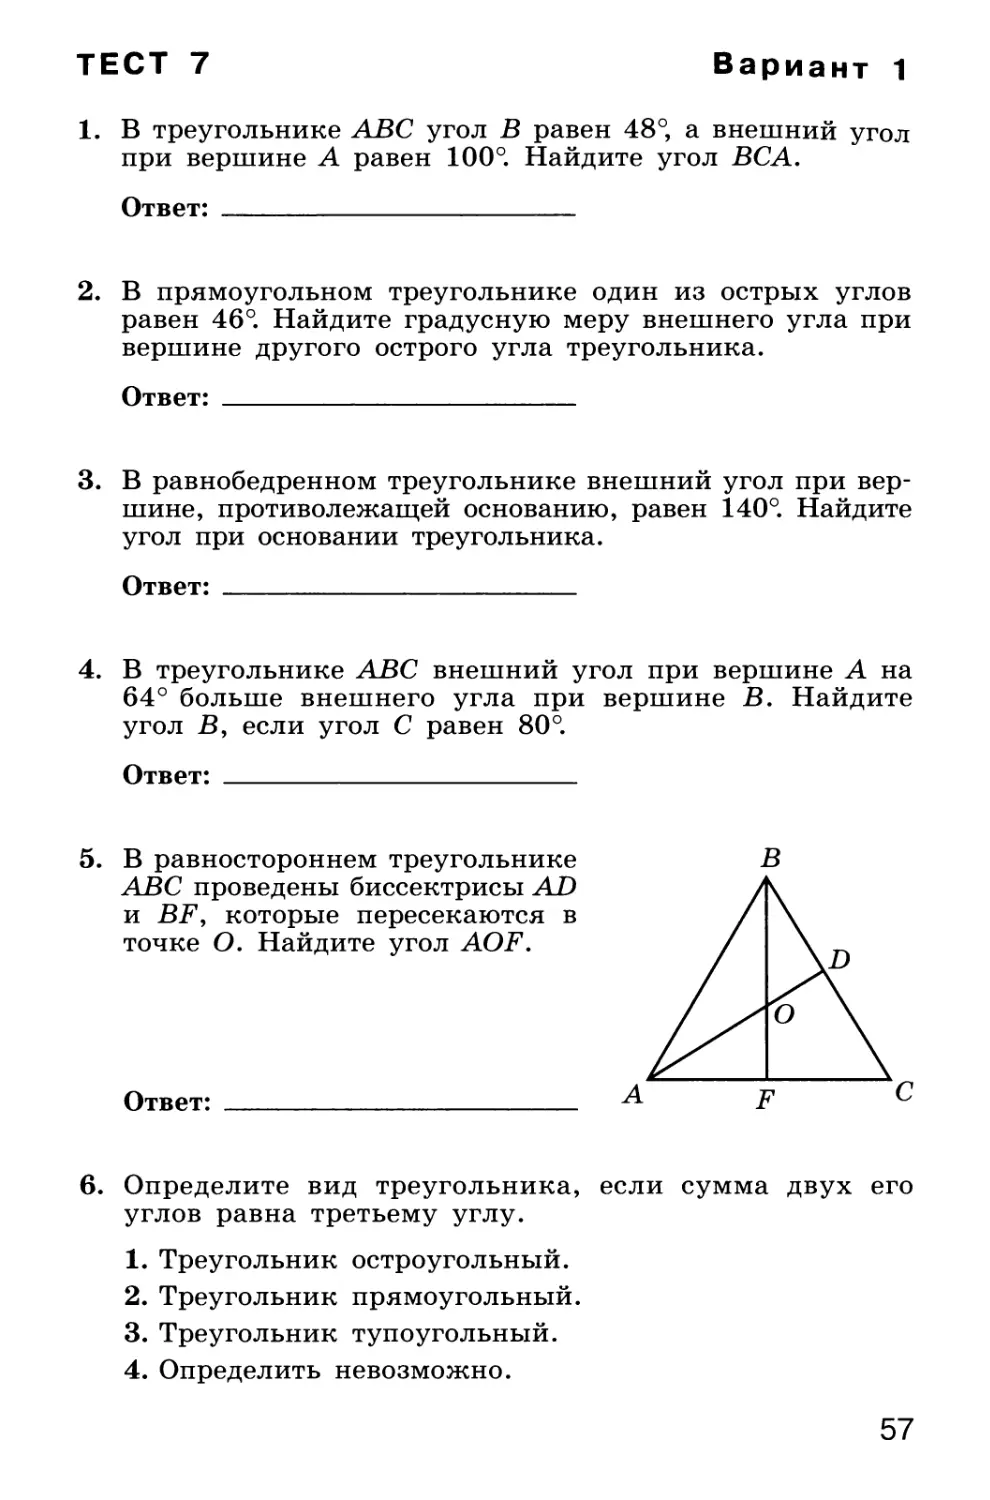 Тест 7. Сумма углов треугольника